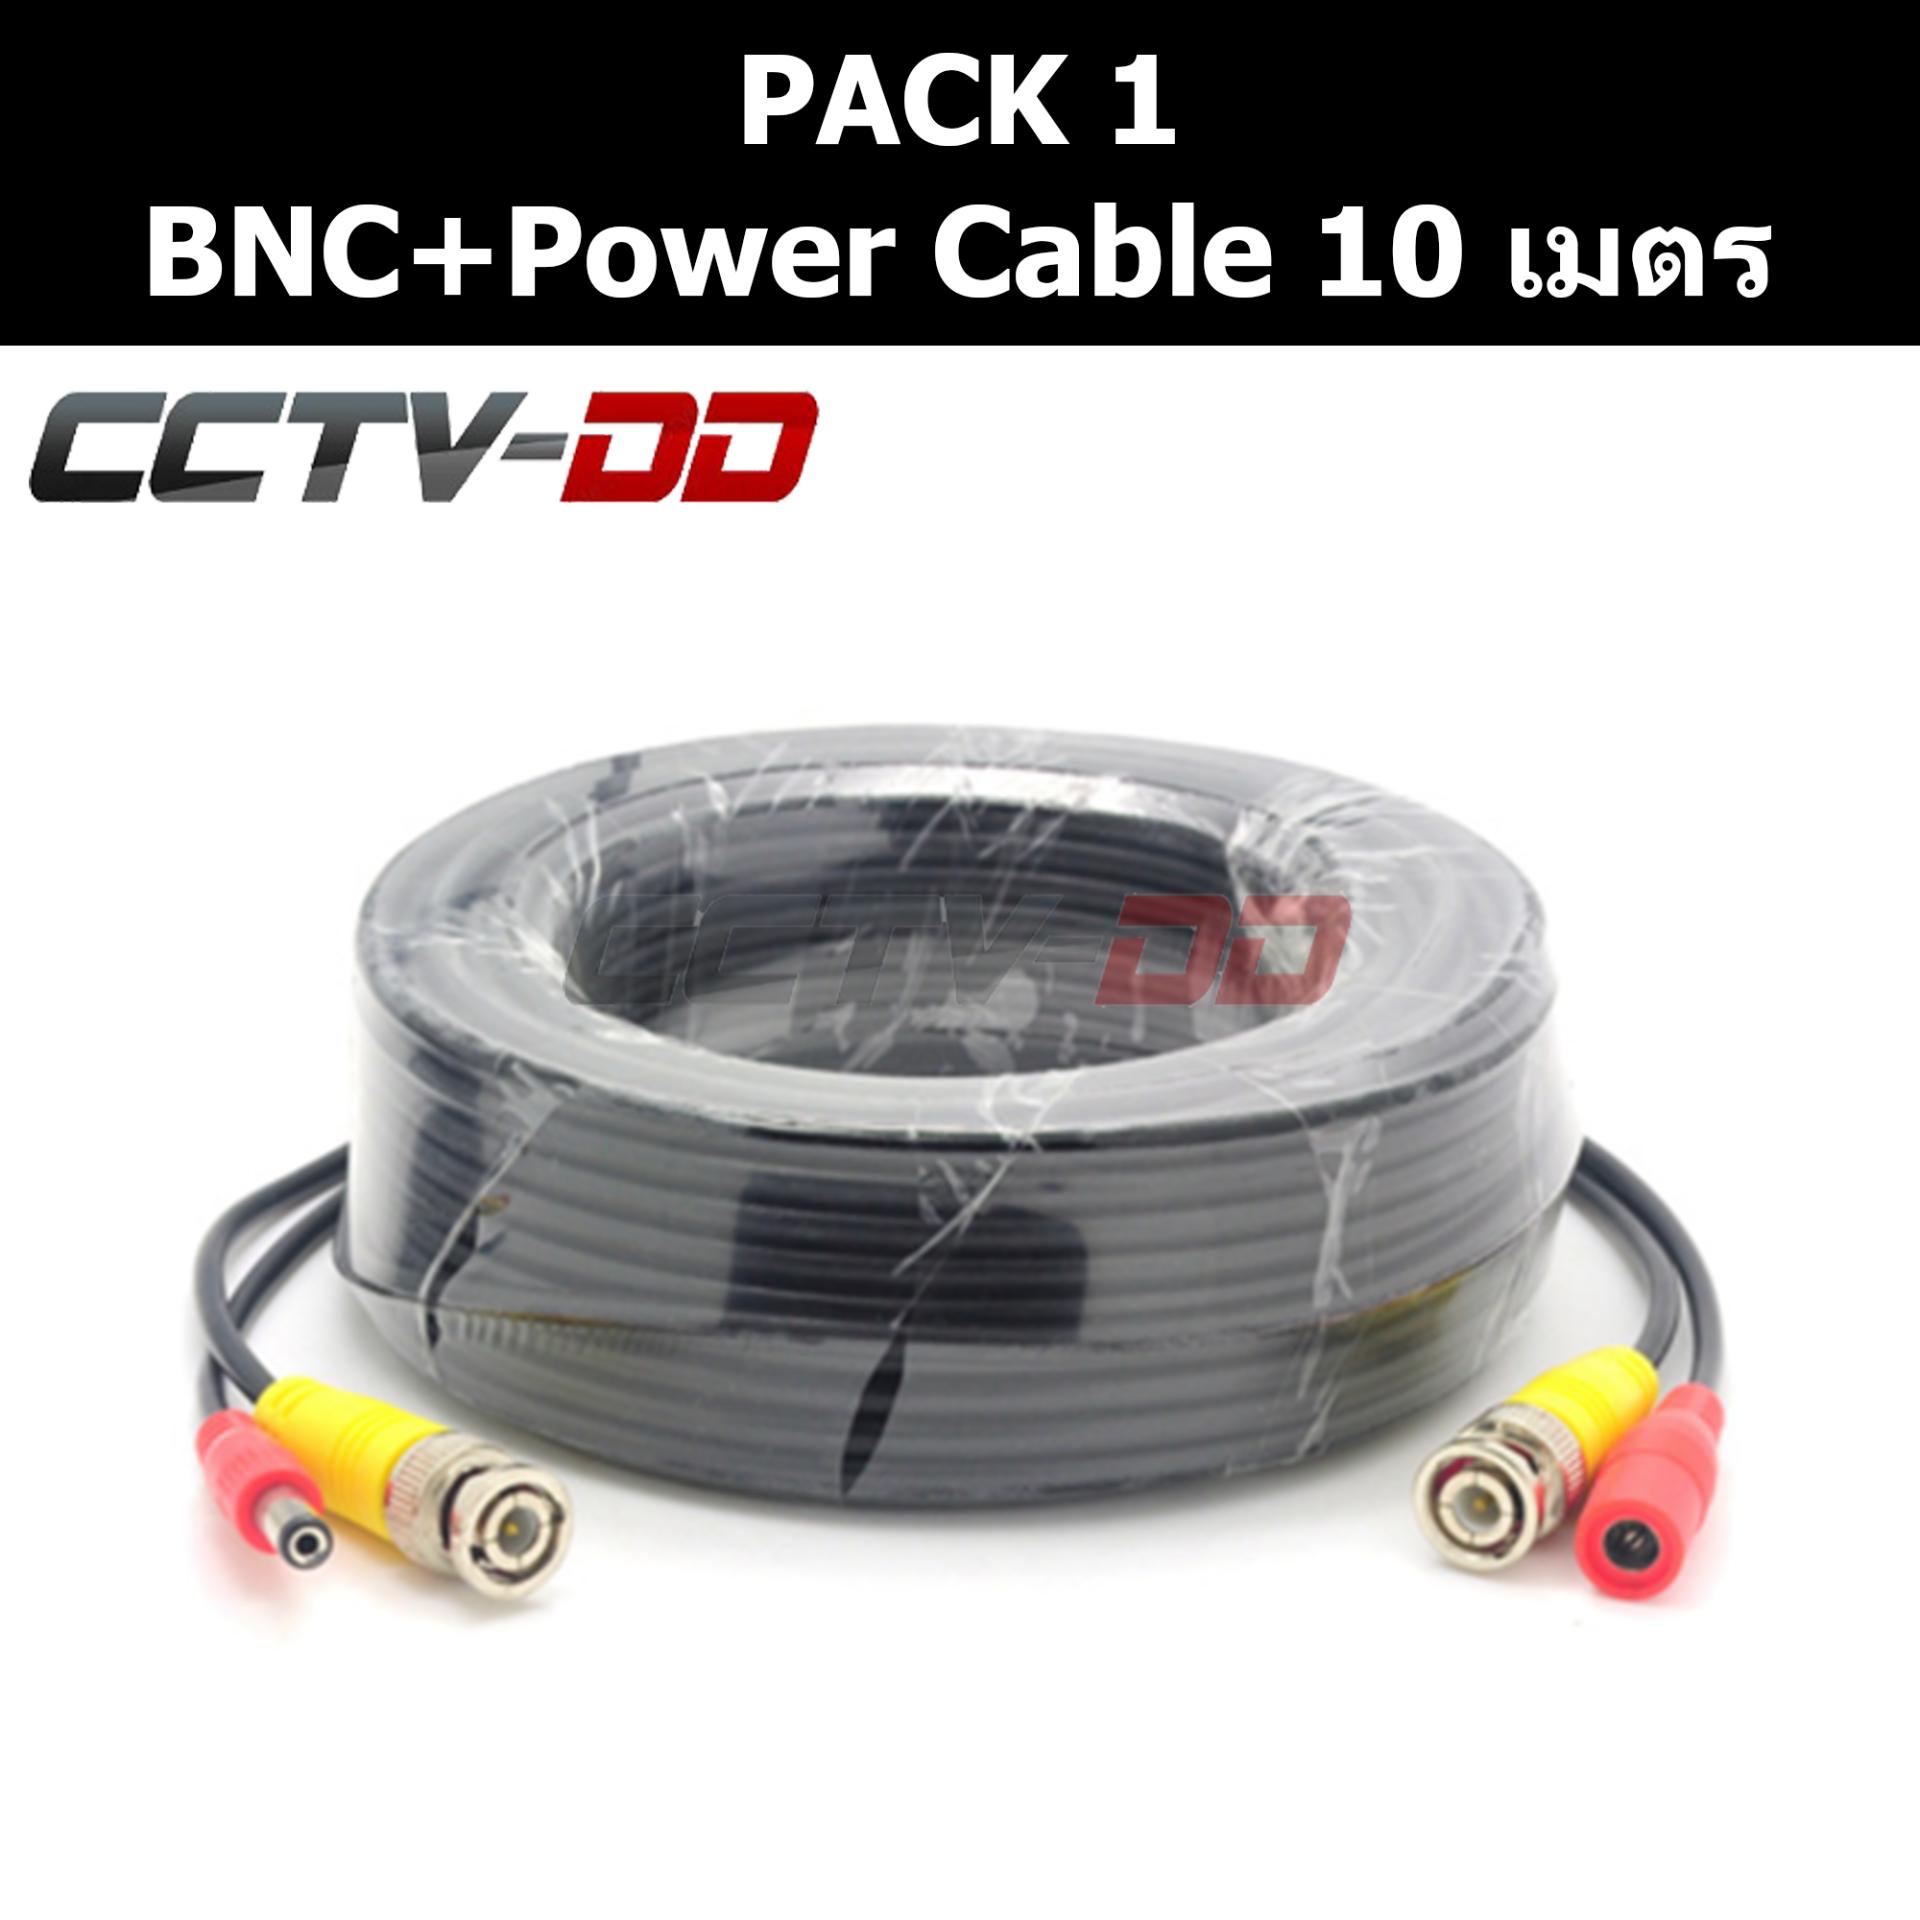 สายสำเร็จรูป สำหรับกล้องวงจรปิด BNC+power cable 10 เมตร Pack 1